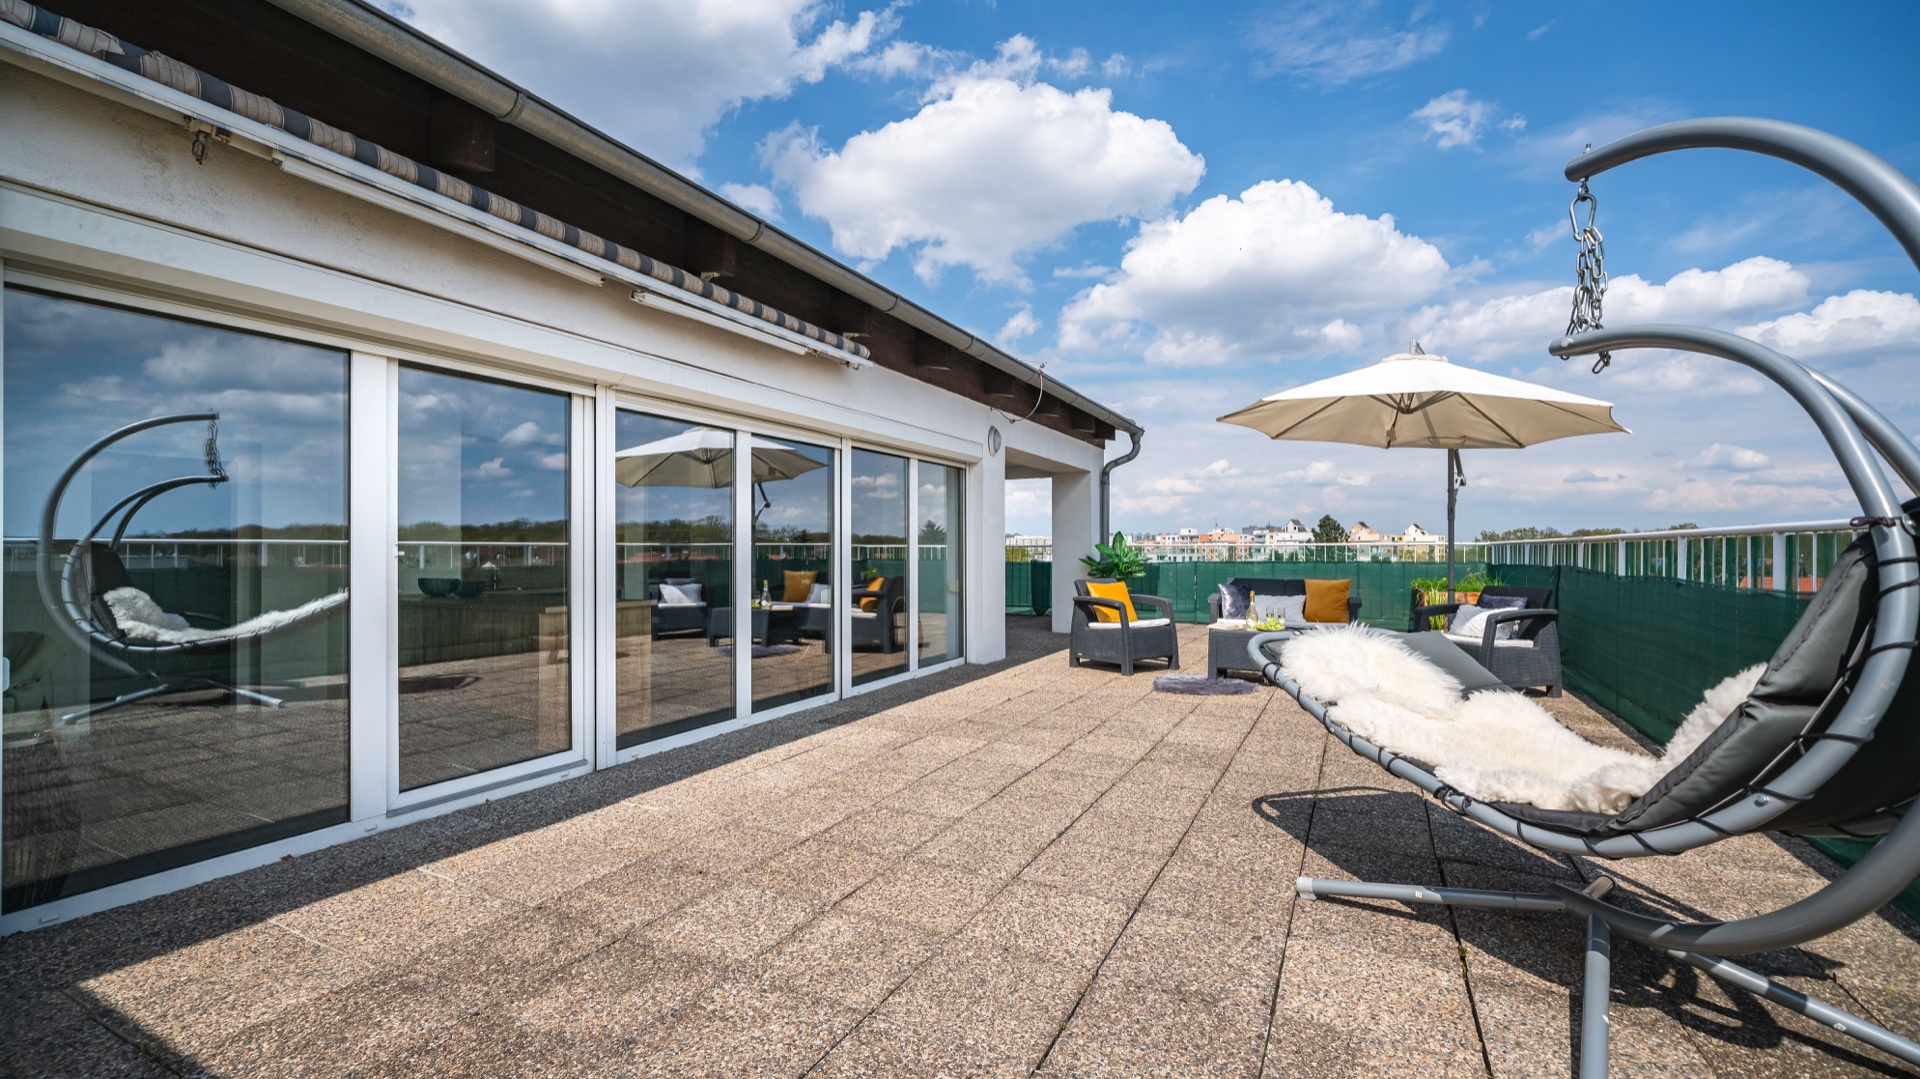 Moderní střešní byt s velikánskou terasou a garážovým stáním